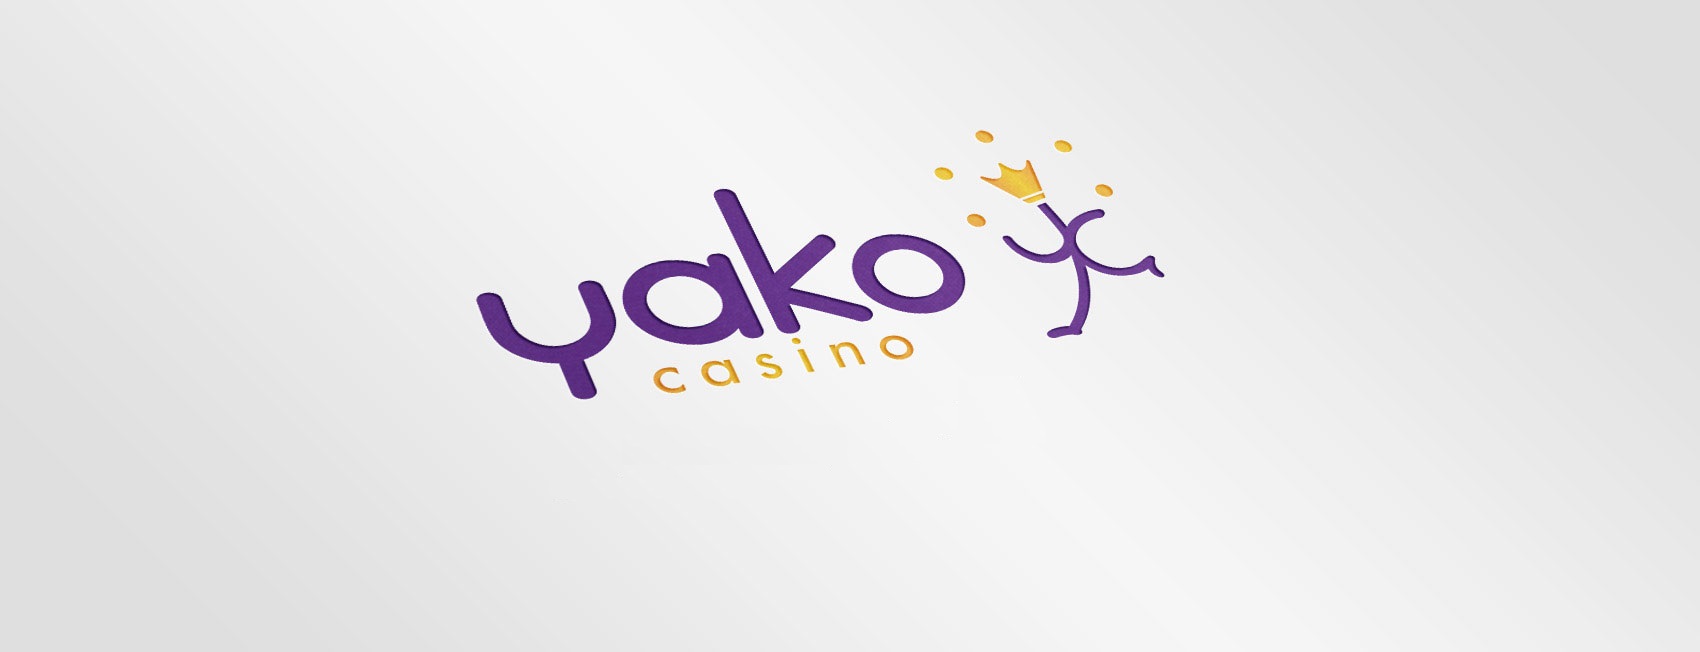 Colección de juegos de Yako Casino